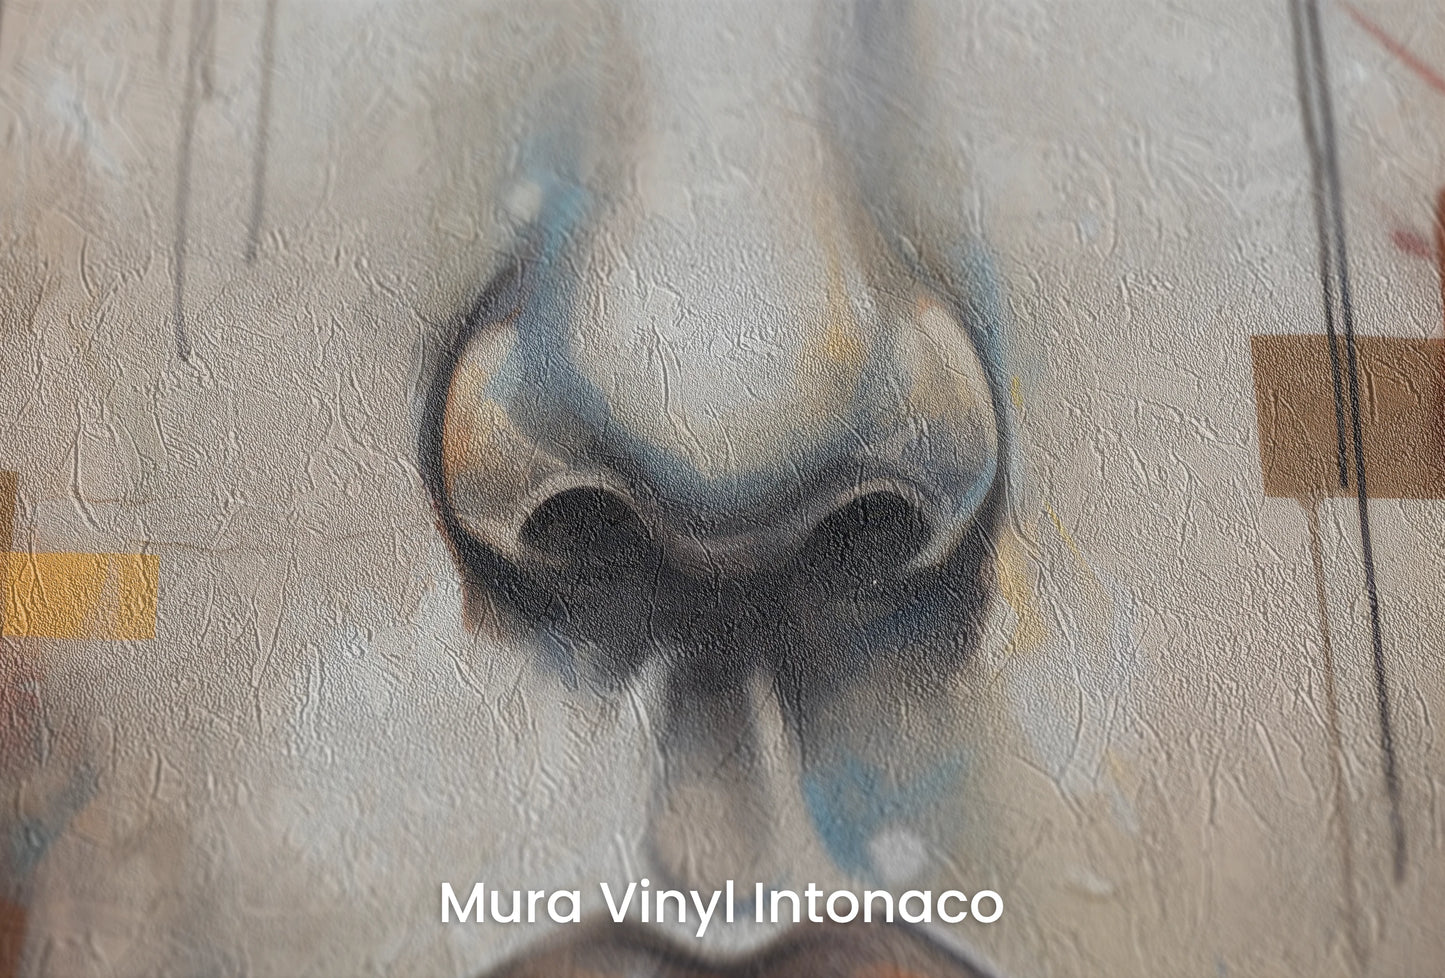 Zbliżenie na artystyczną fototapetę o nazwie Urban Reflections na podłożu Mura Vinyl Intonaco - struktura tartego tynku.